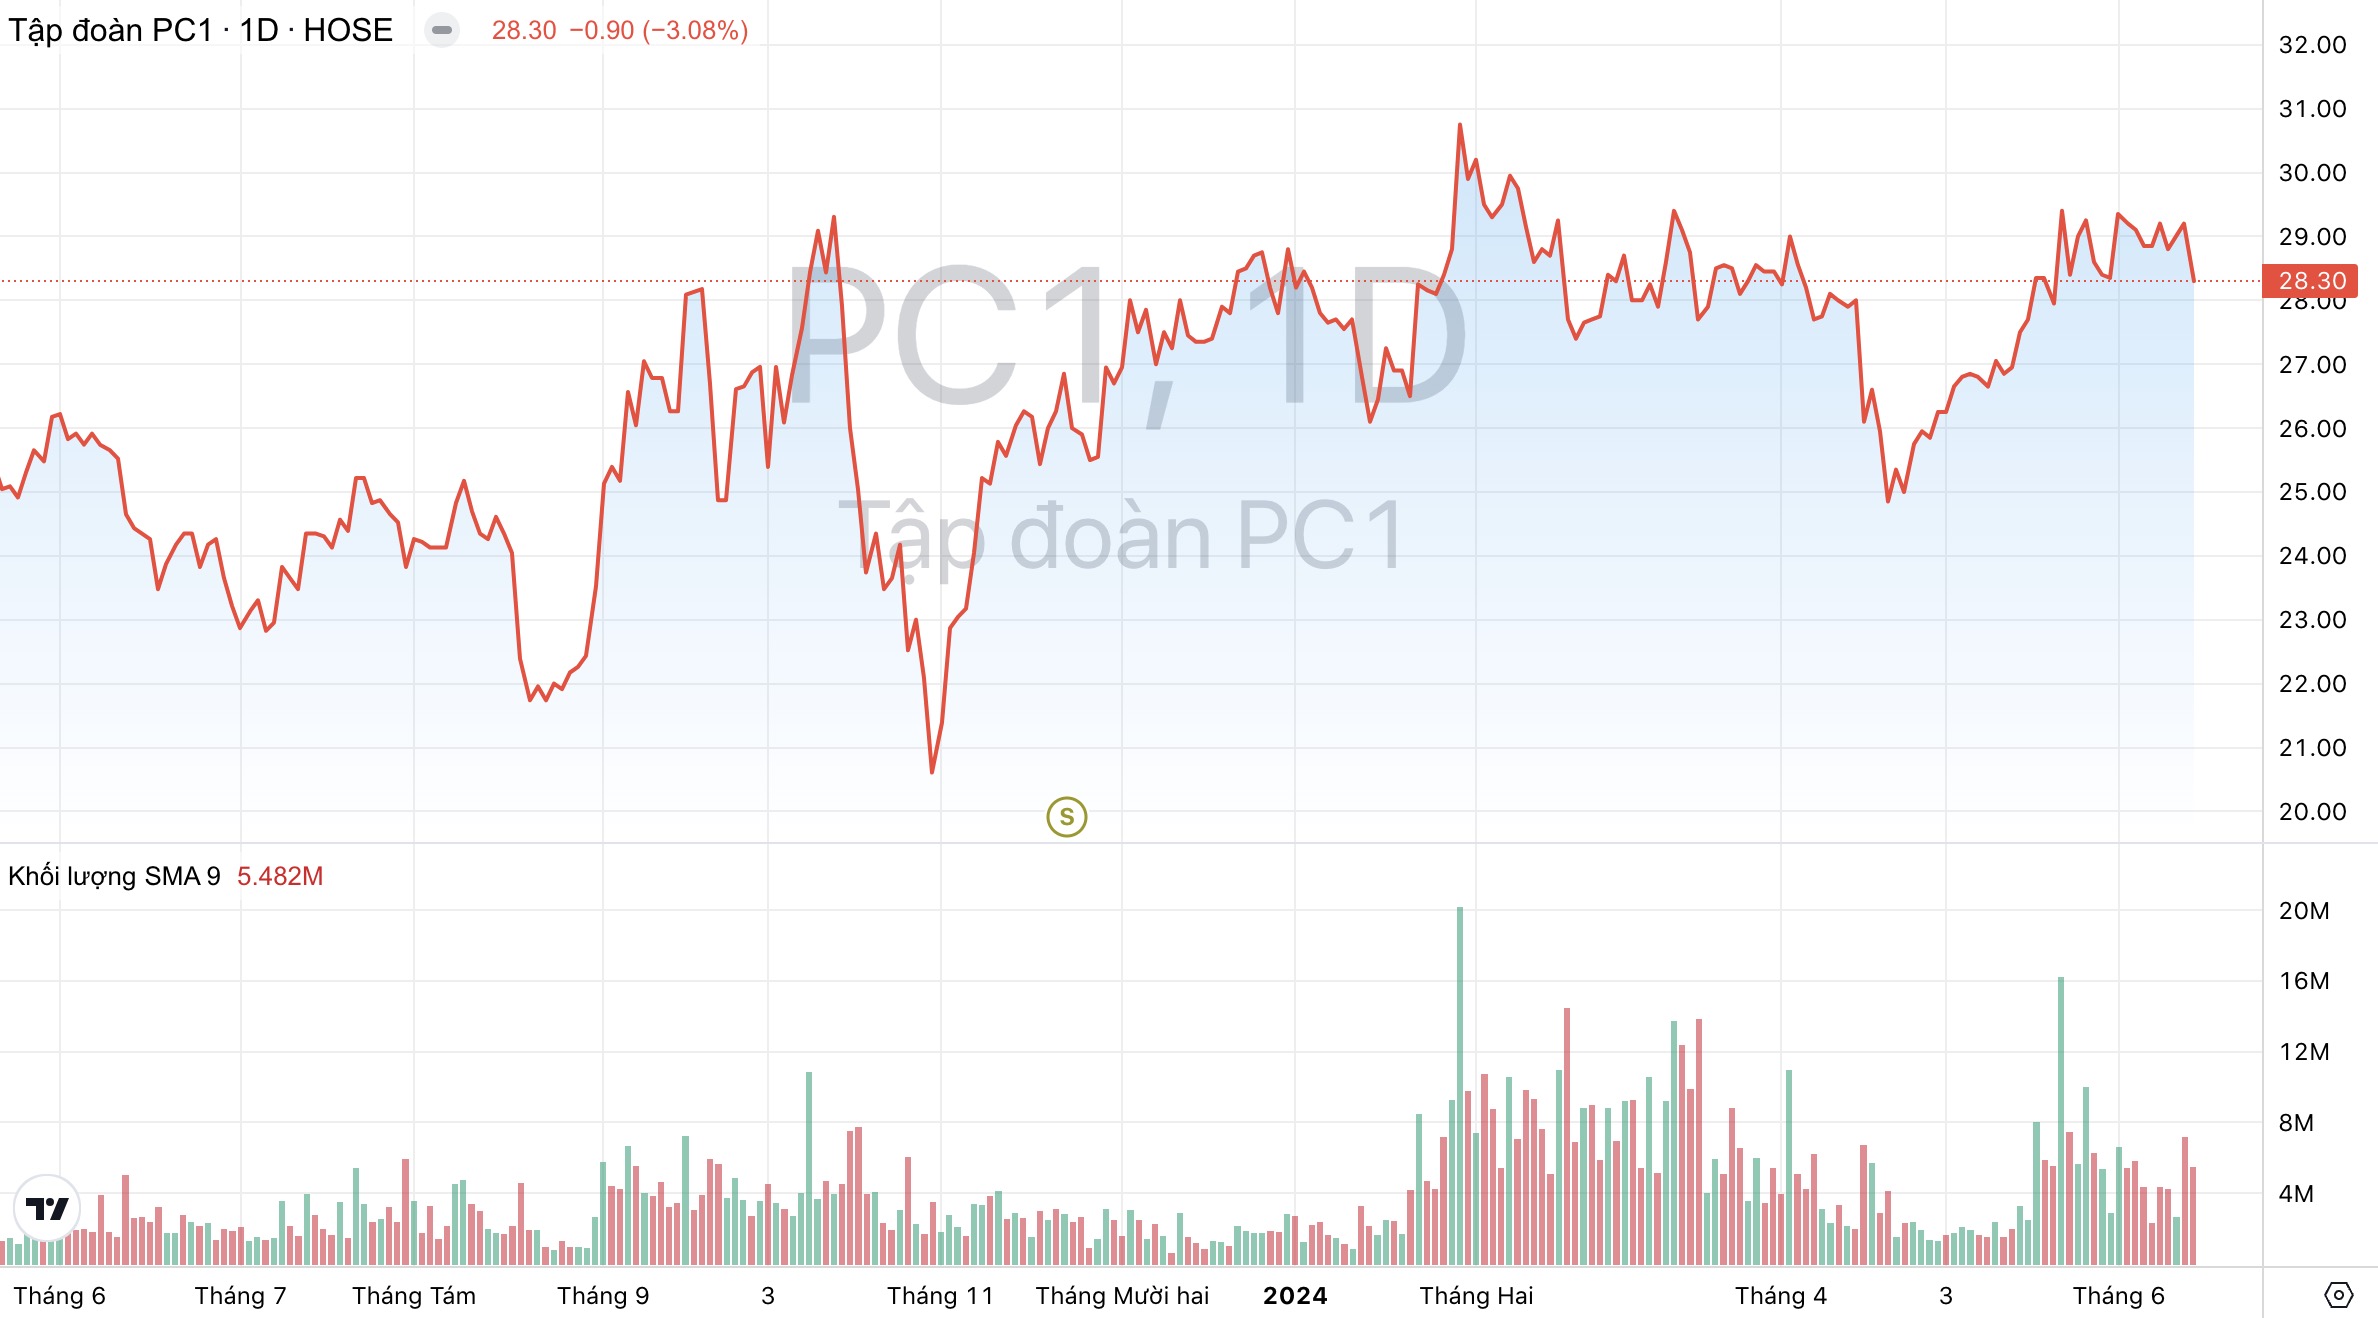 Giá cổ phiếu PC1 Tập đoàn PC1